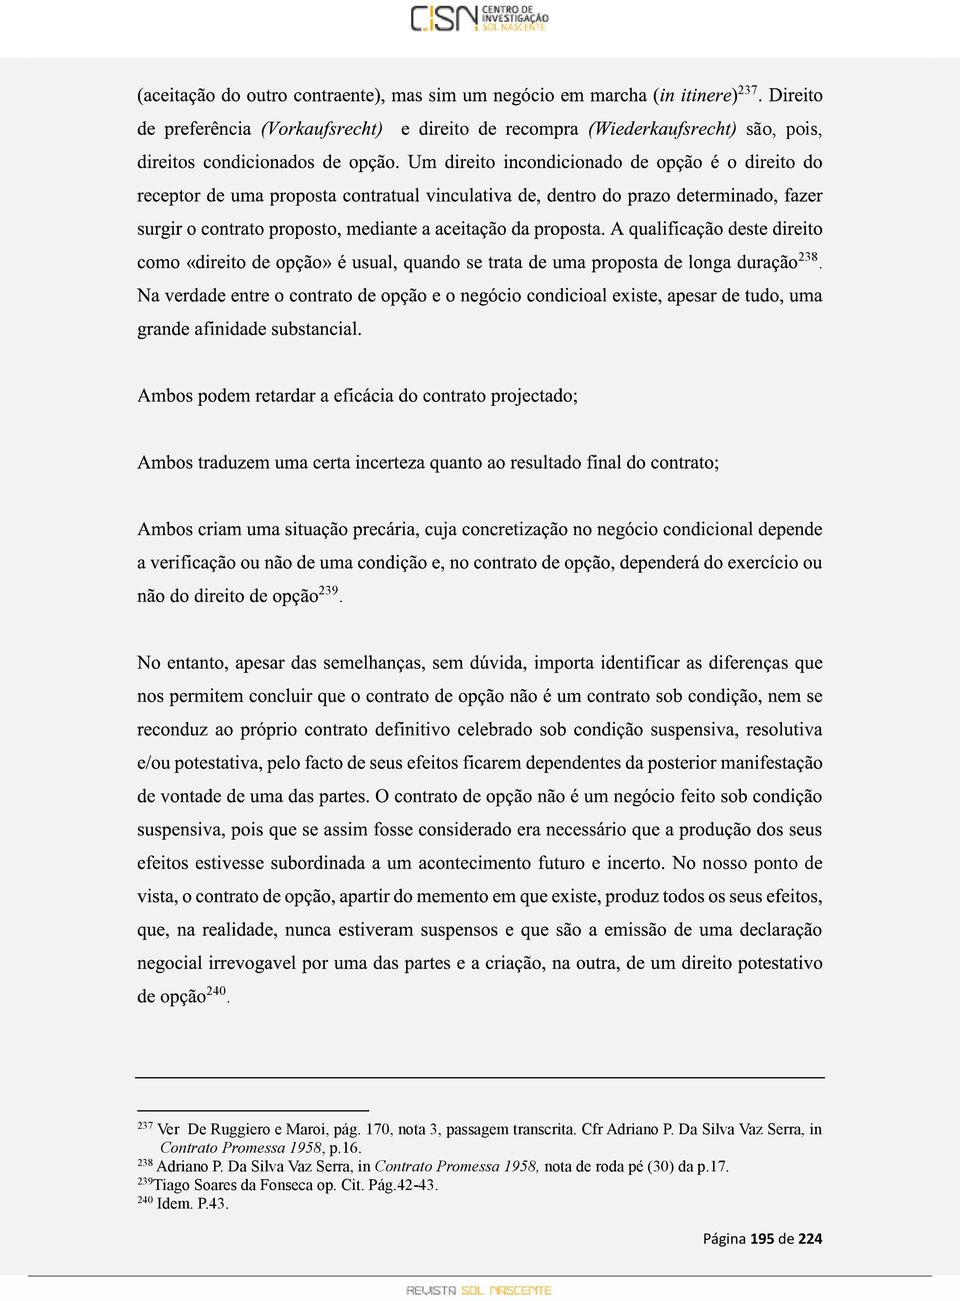 Da Silva Vaz Serra, in Contrato Promessa 1958, p.16. 238 Adriano P.